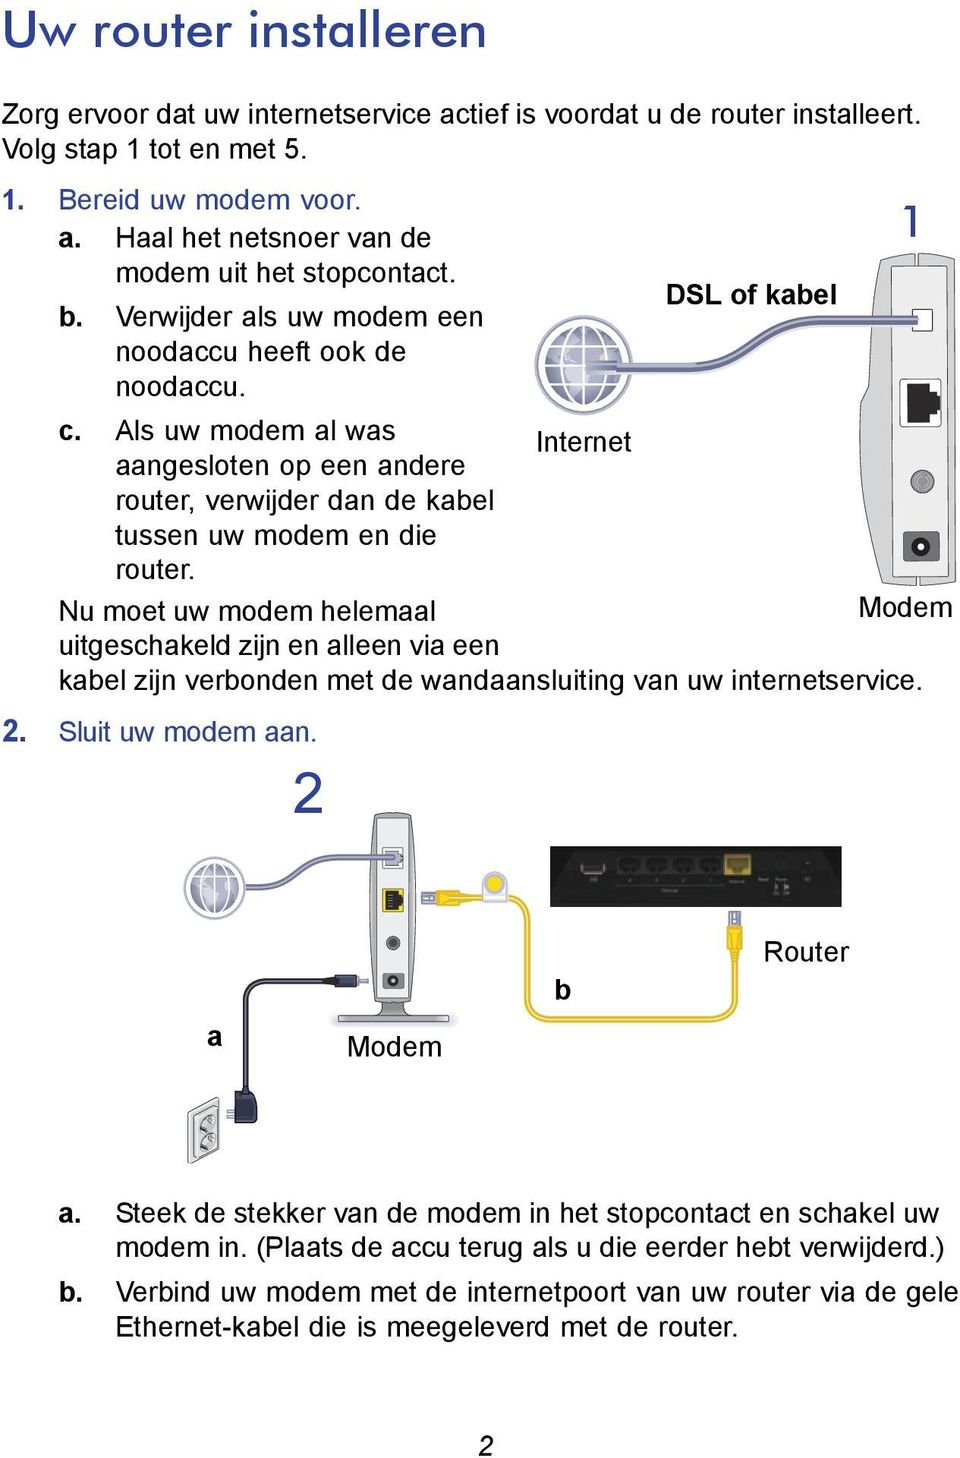 Nu moet uw modem helemaal Modem uitgeschakeld zijn en alleen via een kabel zijn verbonden met de wandaansluiting van uw internetservice. 2. Sluit uw modem aan. 2 a Modem b Router a.